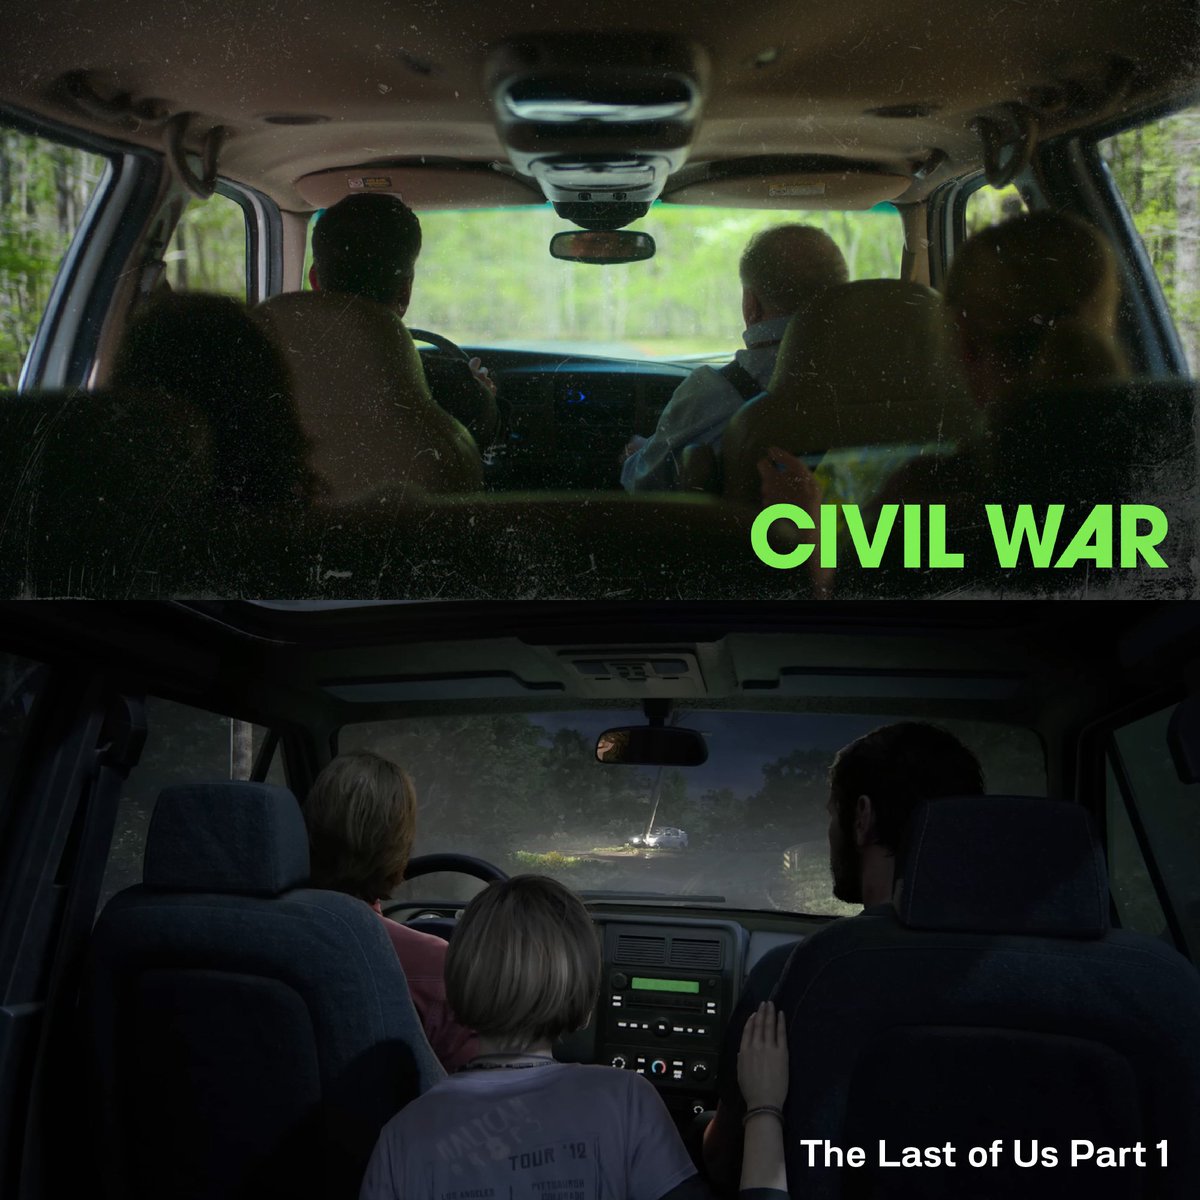 ฉากเปิดเกมในตำนานของ The Last of Us ภาคแรก แม้จะเป็นมุมกล้องมาตรฐานในการเล่าฉากขับรถในภาพยนตร์แต่เหนืออื่นใดคือสภาพแวดล้อมระหว่างทาง มู๊ดและโทนของดินแดนสหรัฐอเมริกาที่เกิดเหตุการณ์ร้ายแรงจนทุกสิ่งทุกอย่างไม่เหมือนเดิมอีกต่อไป

‘CIVIL WAR วิบัติสมรภูมิเมืองเดือด’ 11 เมษายนนี้